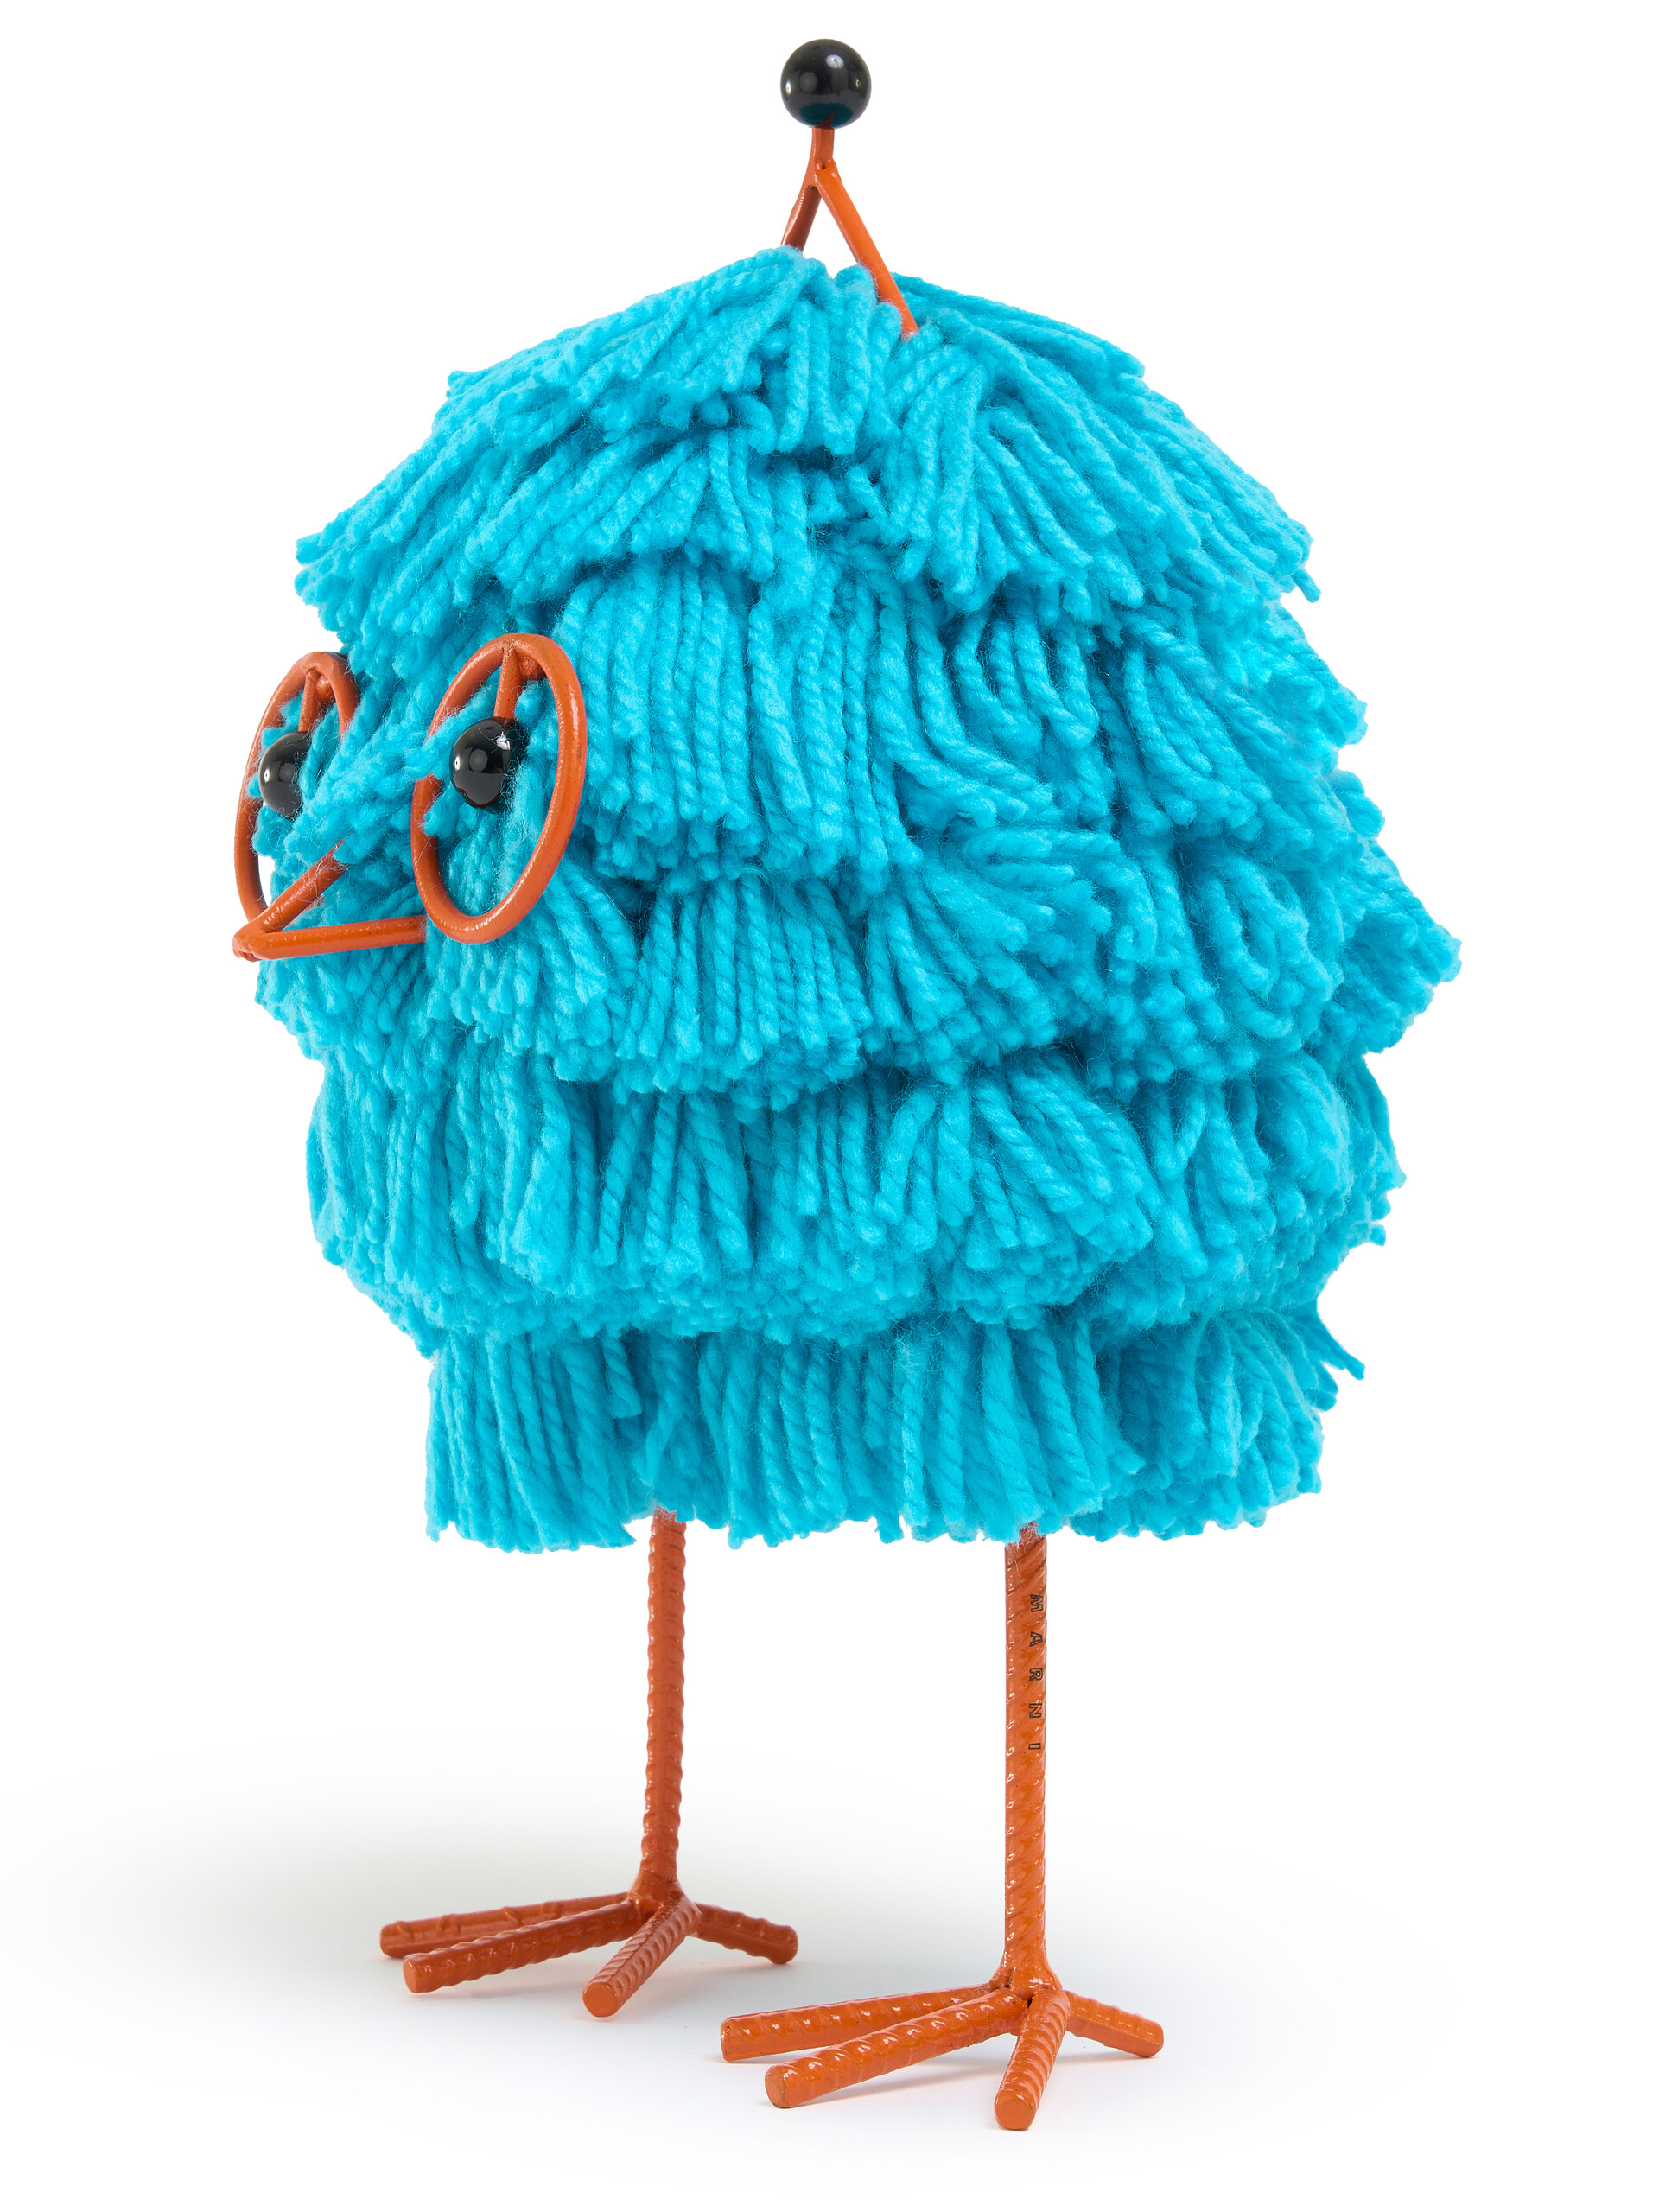 Woolly Friend "Abelo" Piccolo In Lana Azzurra - Accessori - Image 4